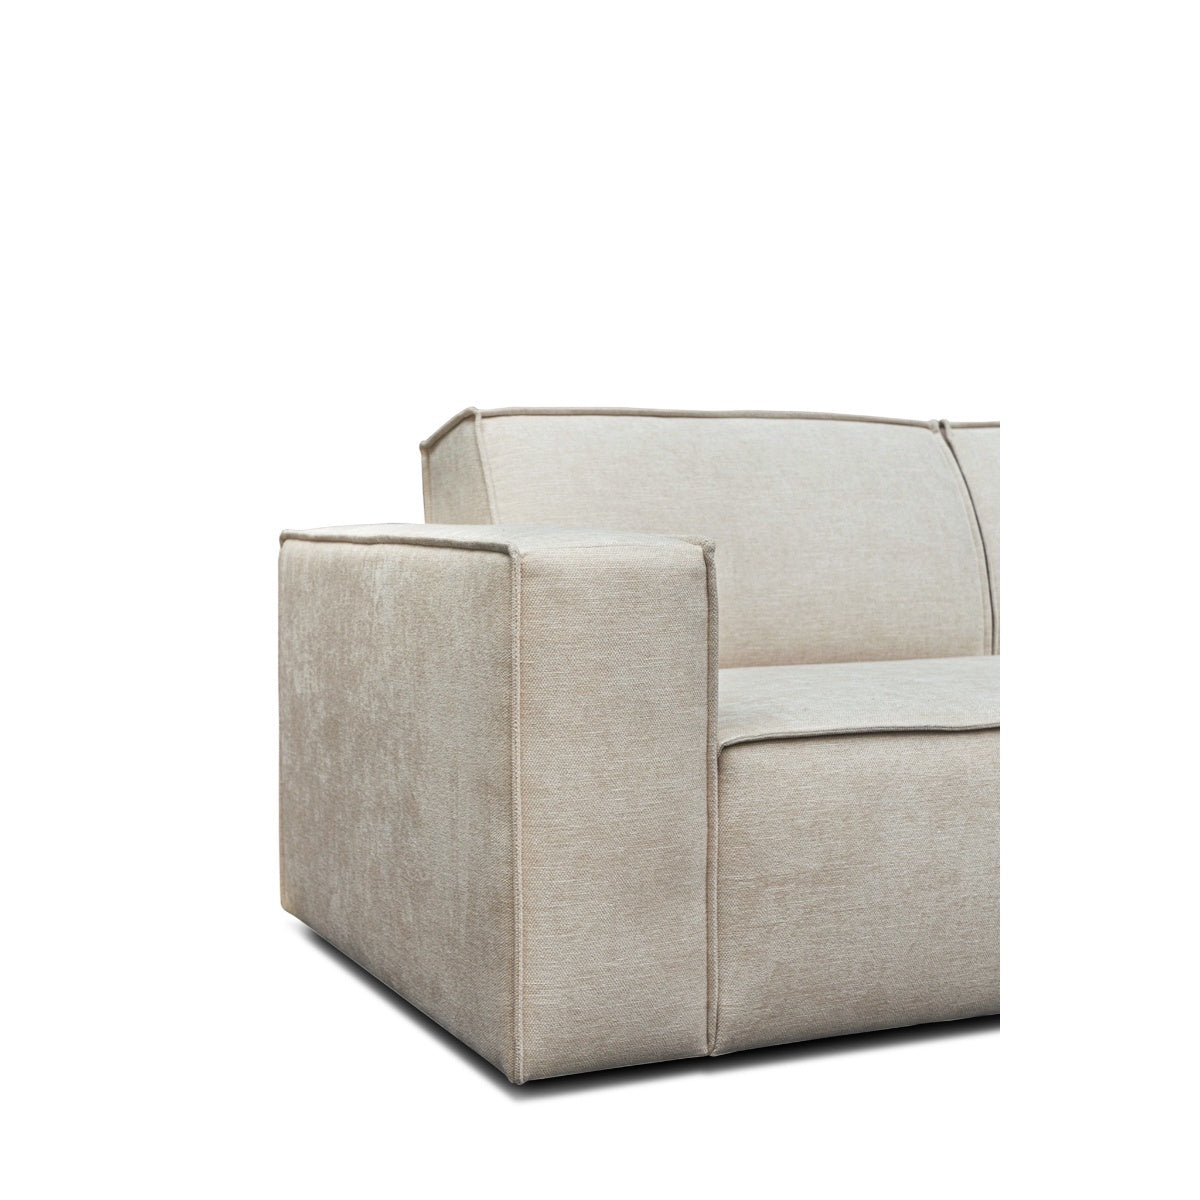 Lyon højrevendt sofa med chaiselong - Møbelkompagniet